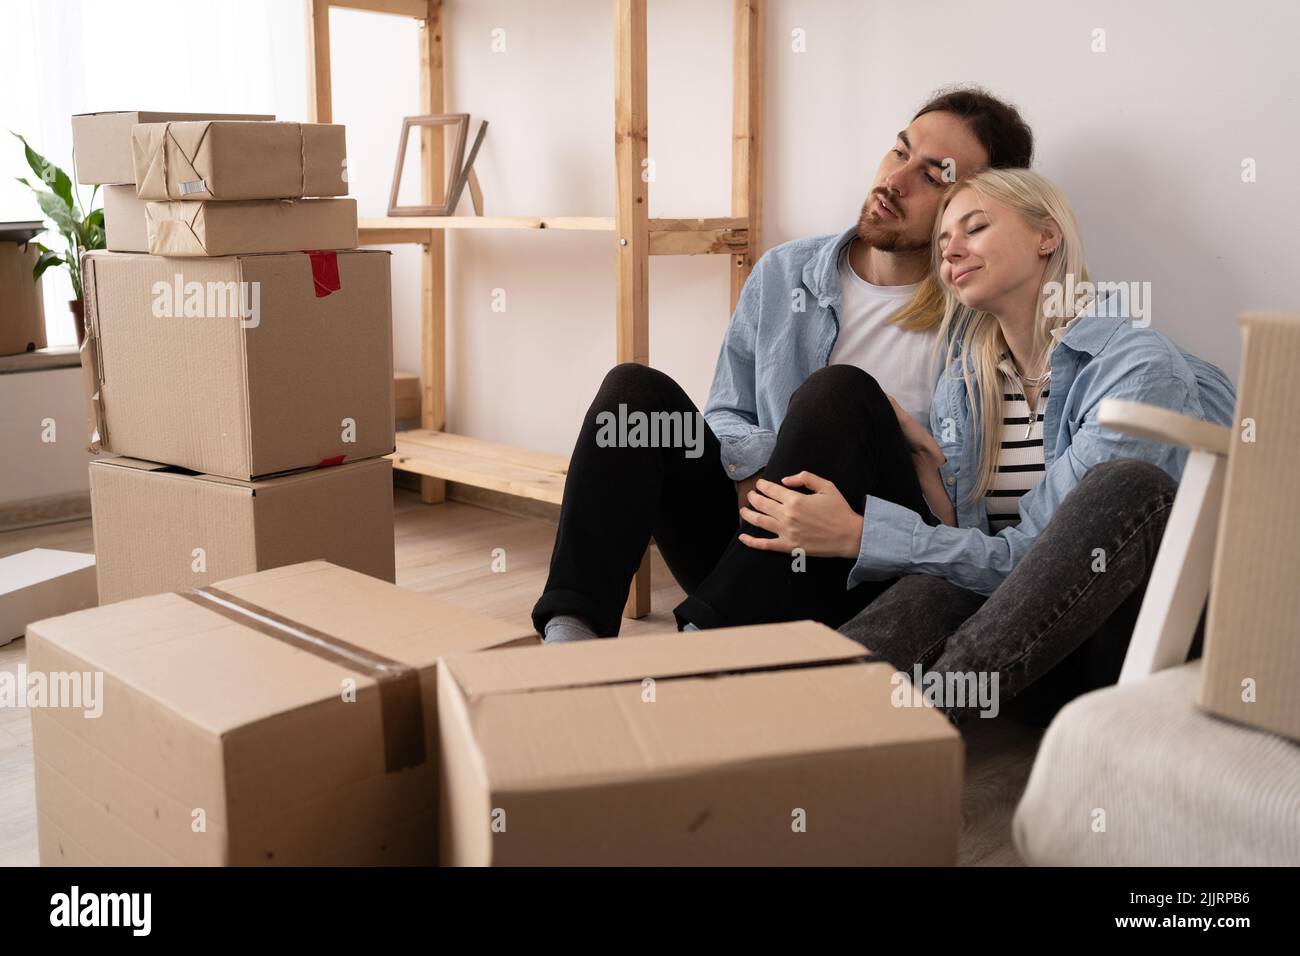 Glückliches junges Paar, das nach dem Umzug auf dem Boden in einer neuen Wohnung sitzt Stockfoto